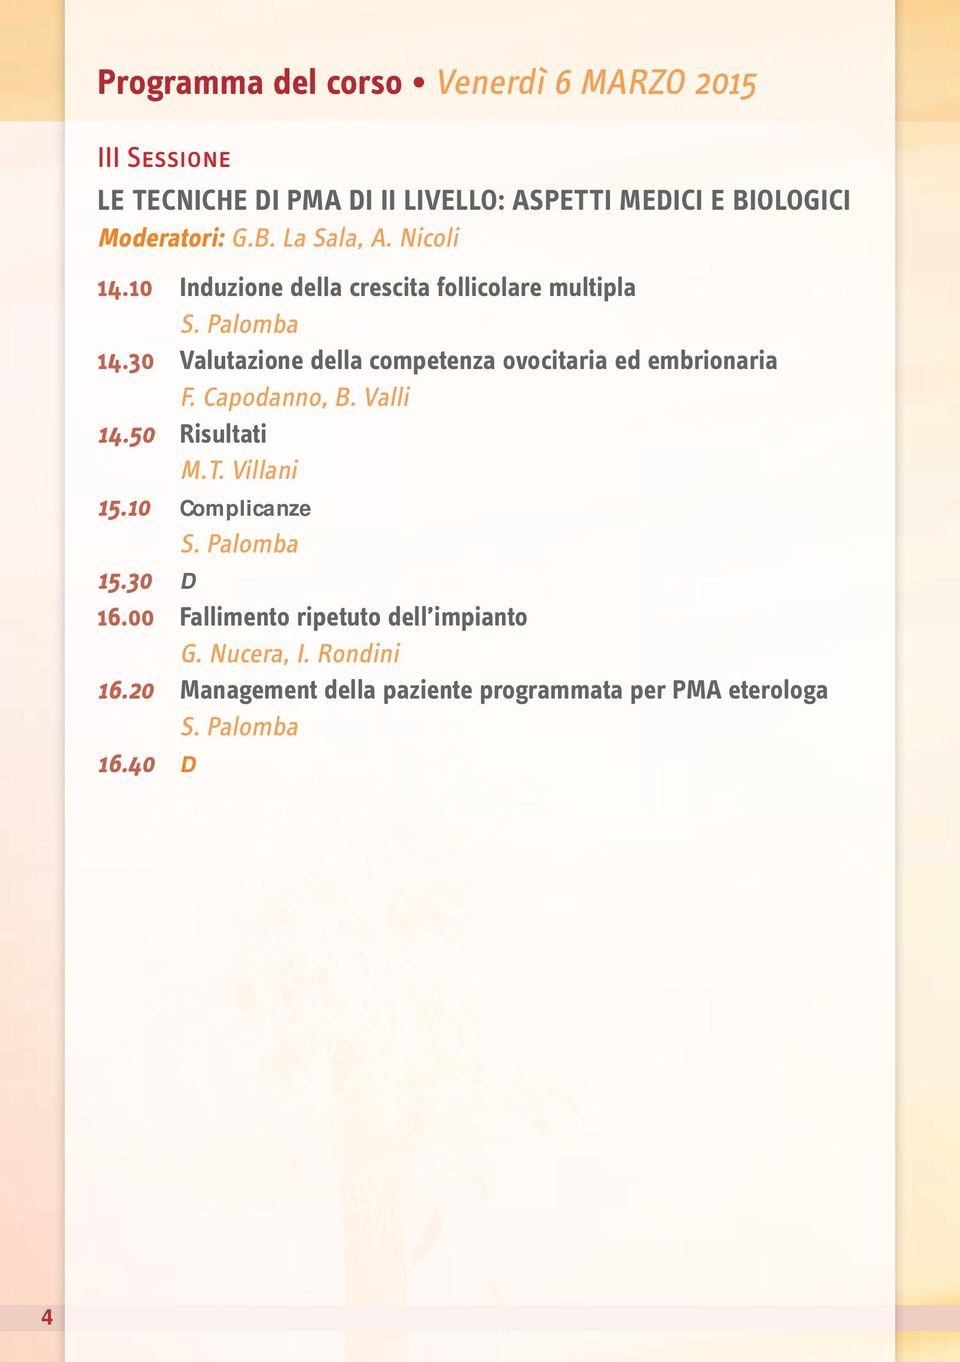 30 Valutazione della competenza ovocitaria ed embrionaria F. Capodanno, B. Valli 14.50 Risultati M.T. Villani 15.